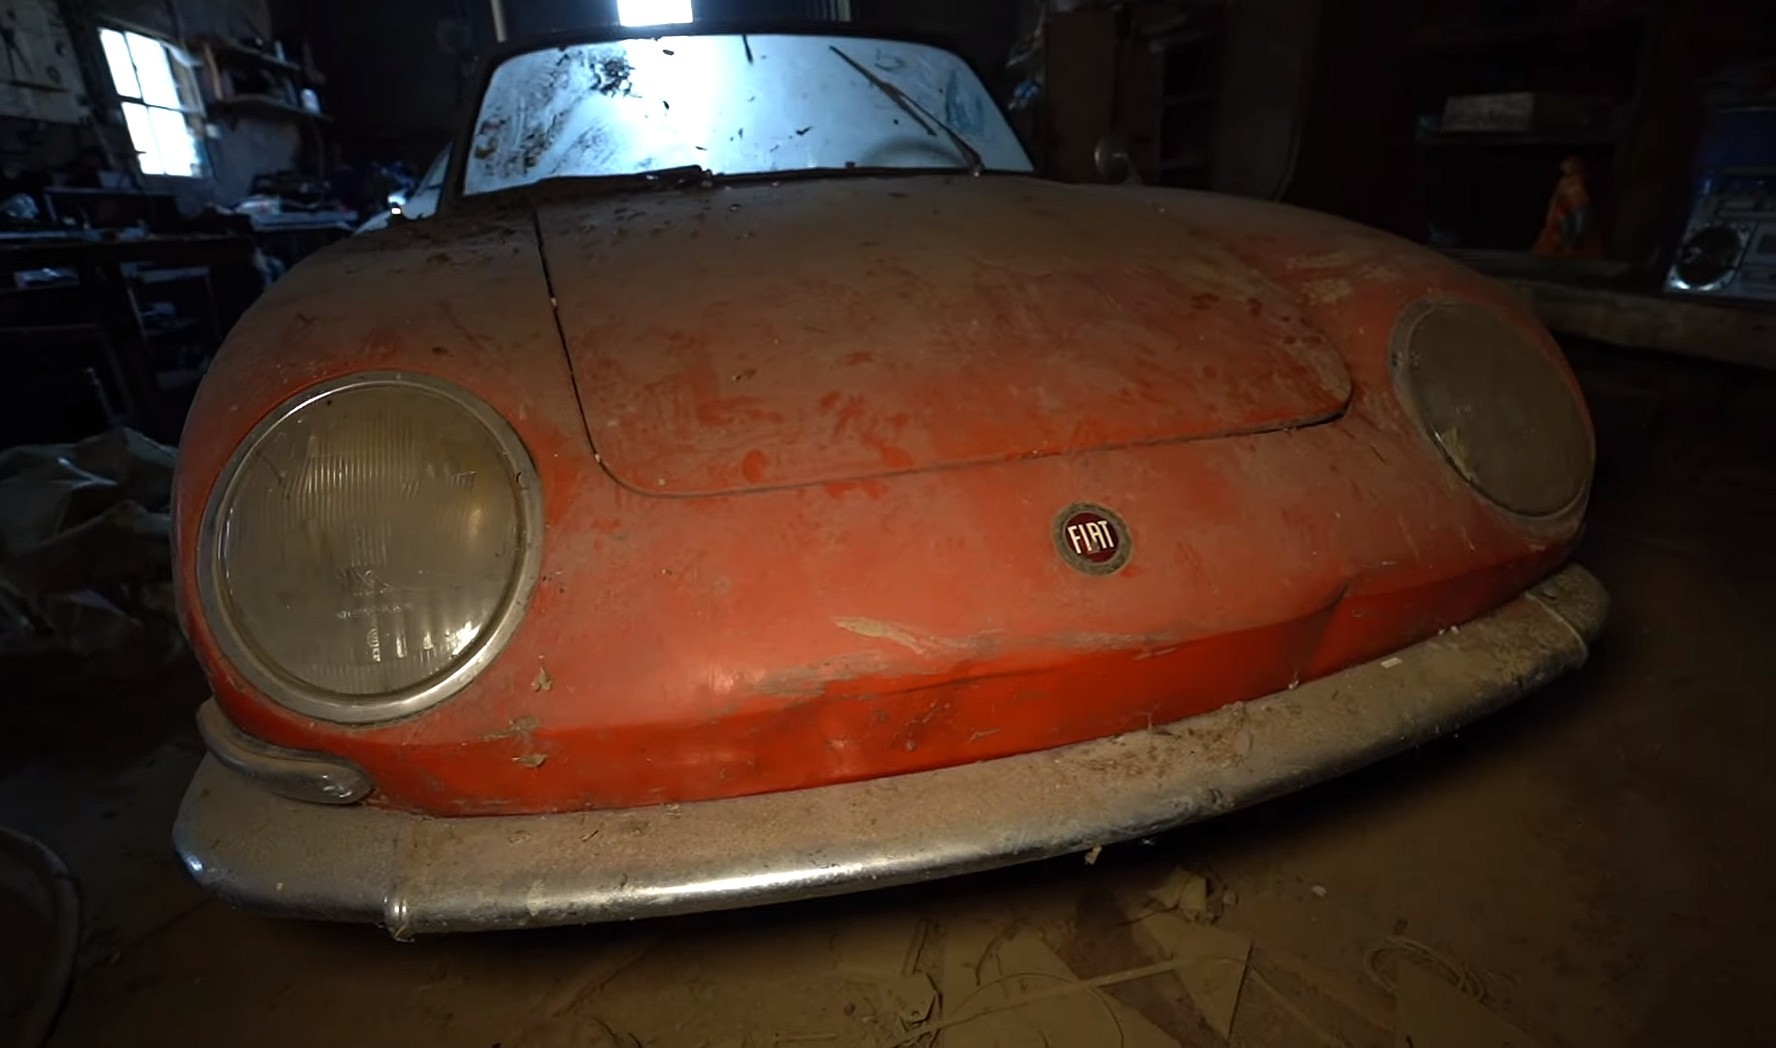 Video: Forgotten Fiat 850 Spider Found in an Abandoned Mansion's Garage